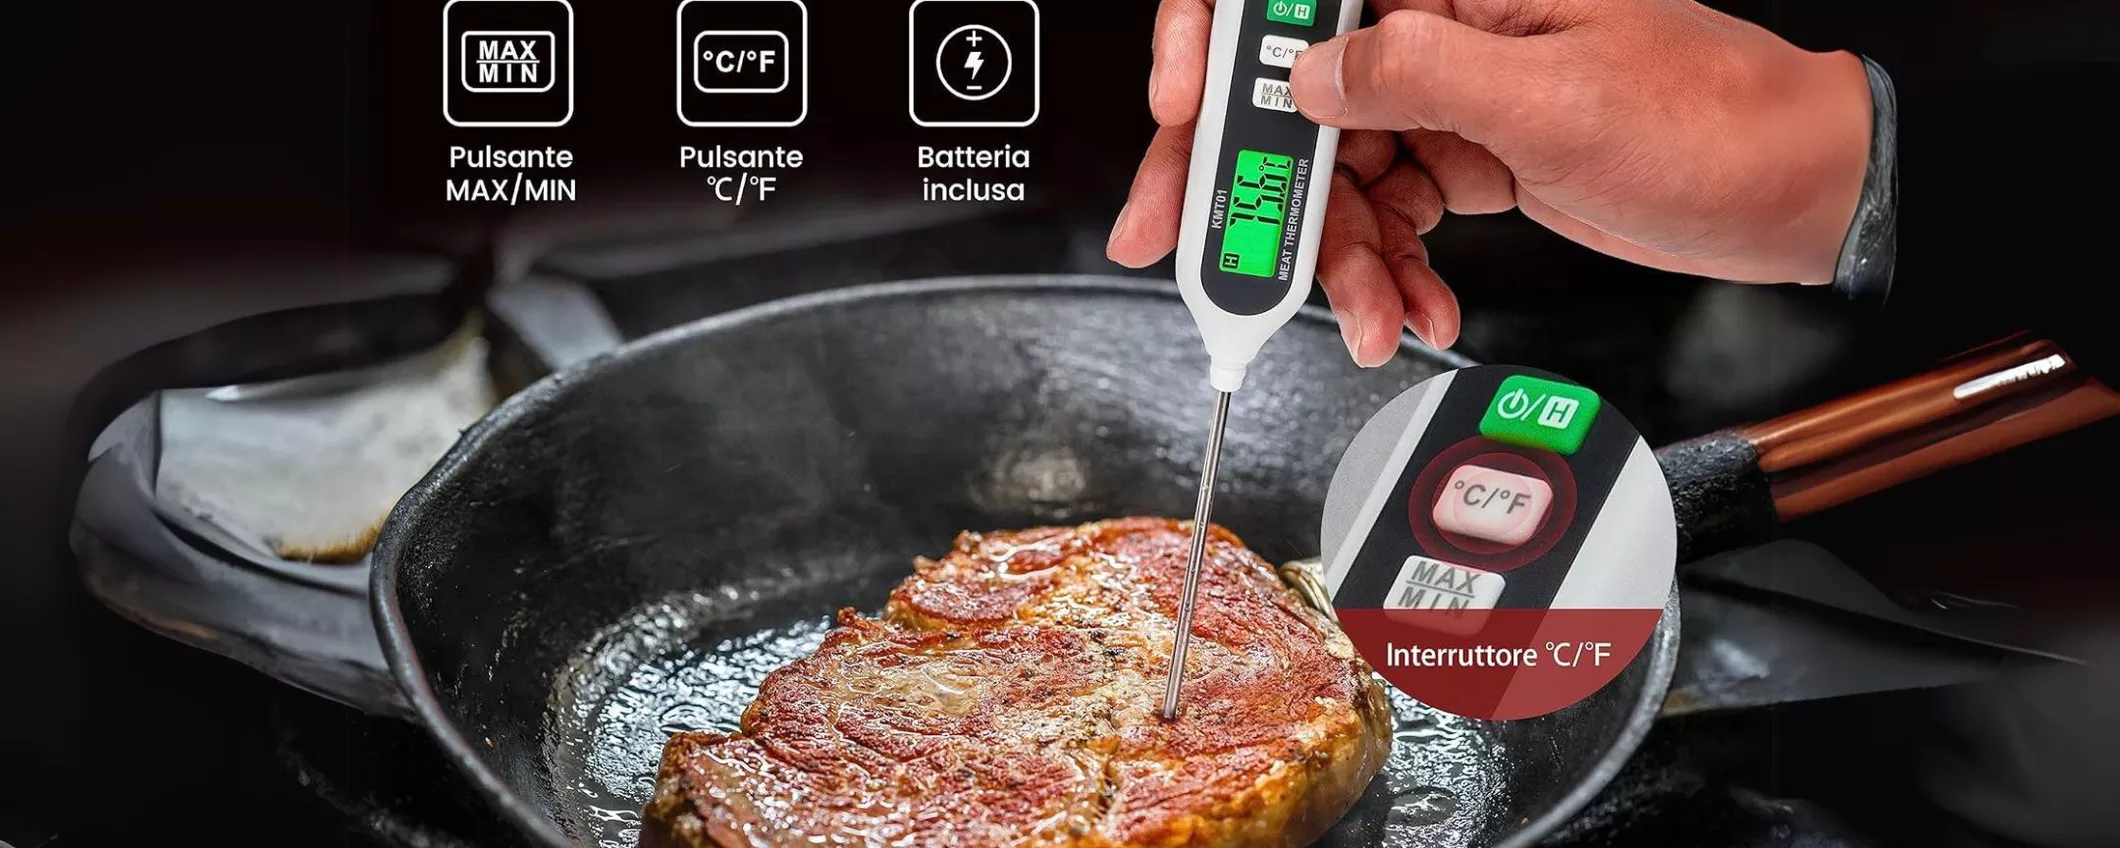 SOLO 8€ per il Termometro da Cucina Professionale: regalalo al tuo amico Chef!